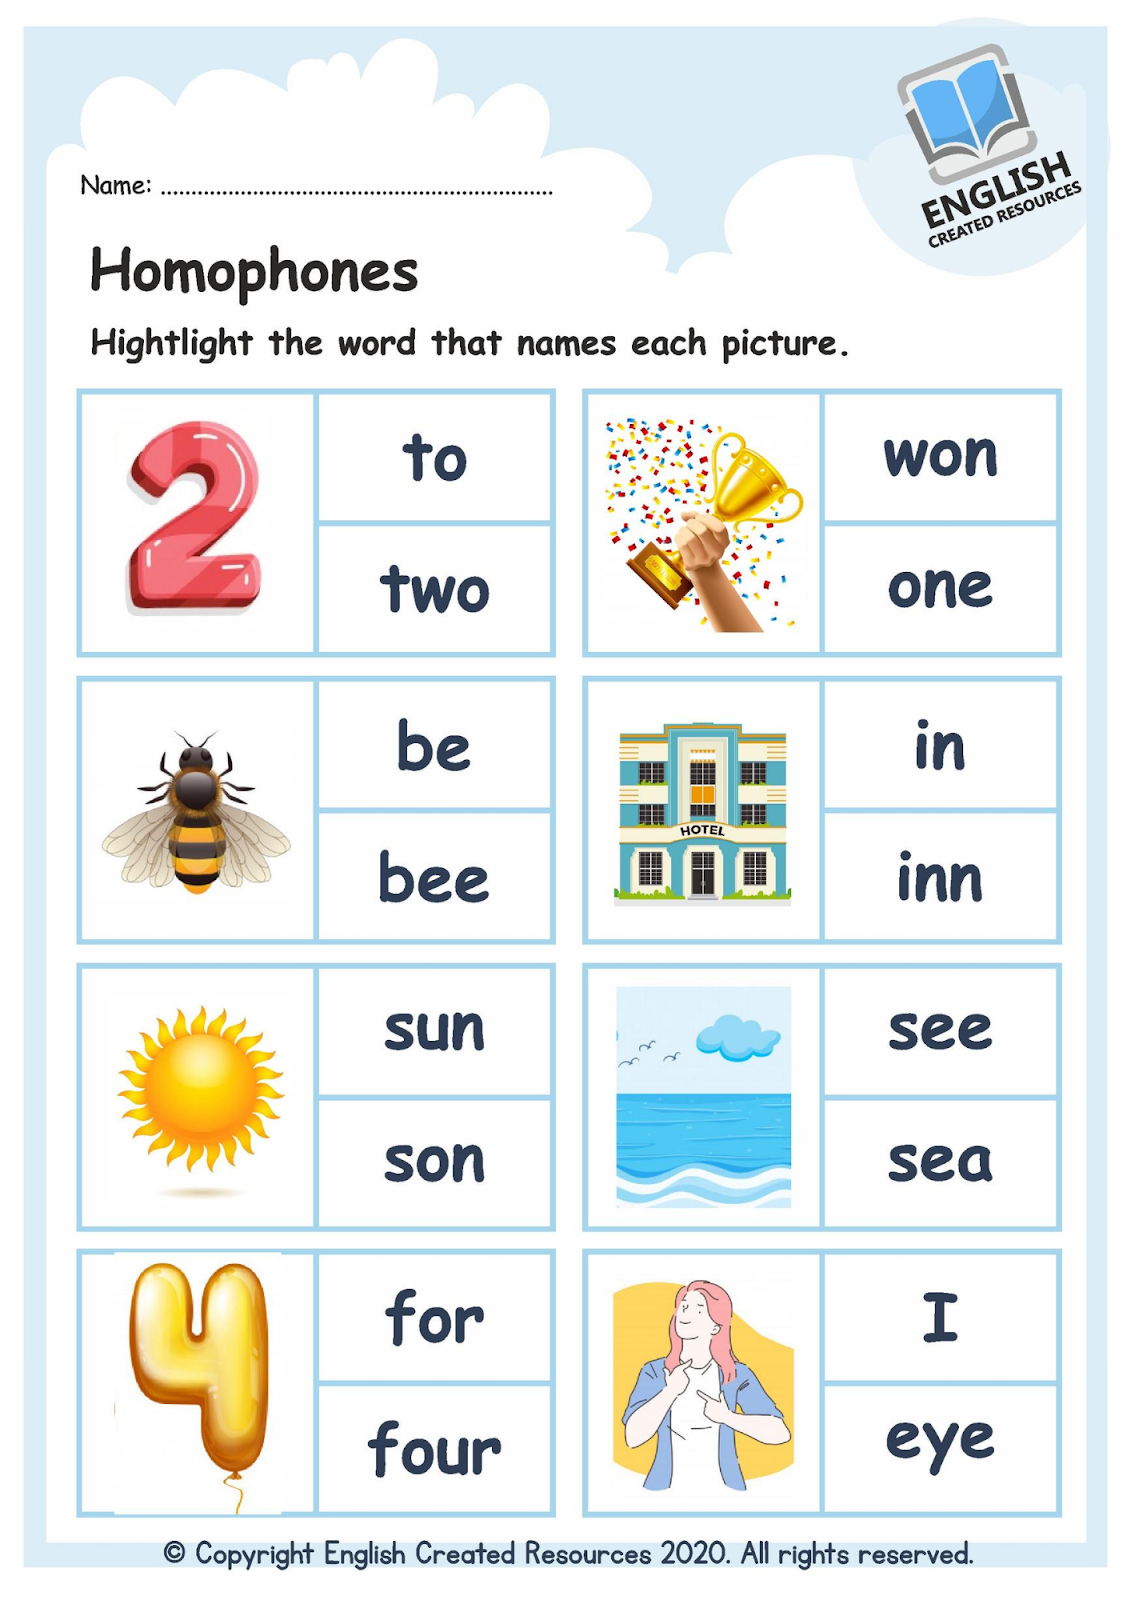 homophones-and-homographs-worksheet